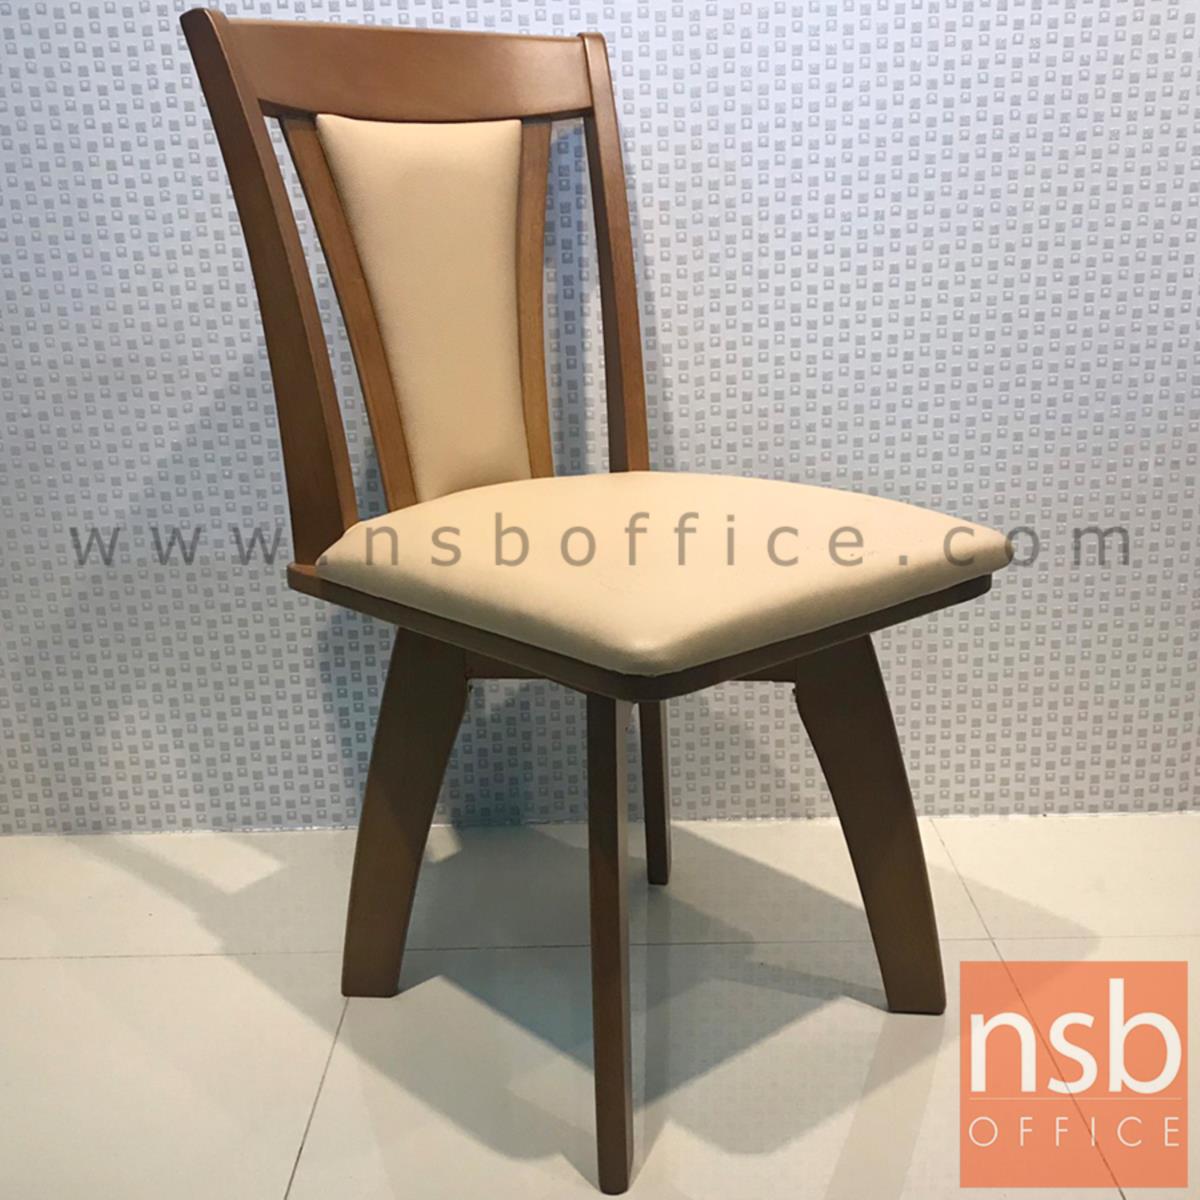 เก้าอี้ไม้ที่นั่งหนังเทียม รุ่น NSB-42 ขนาด 42W cm. 